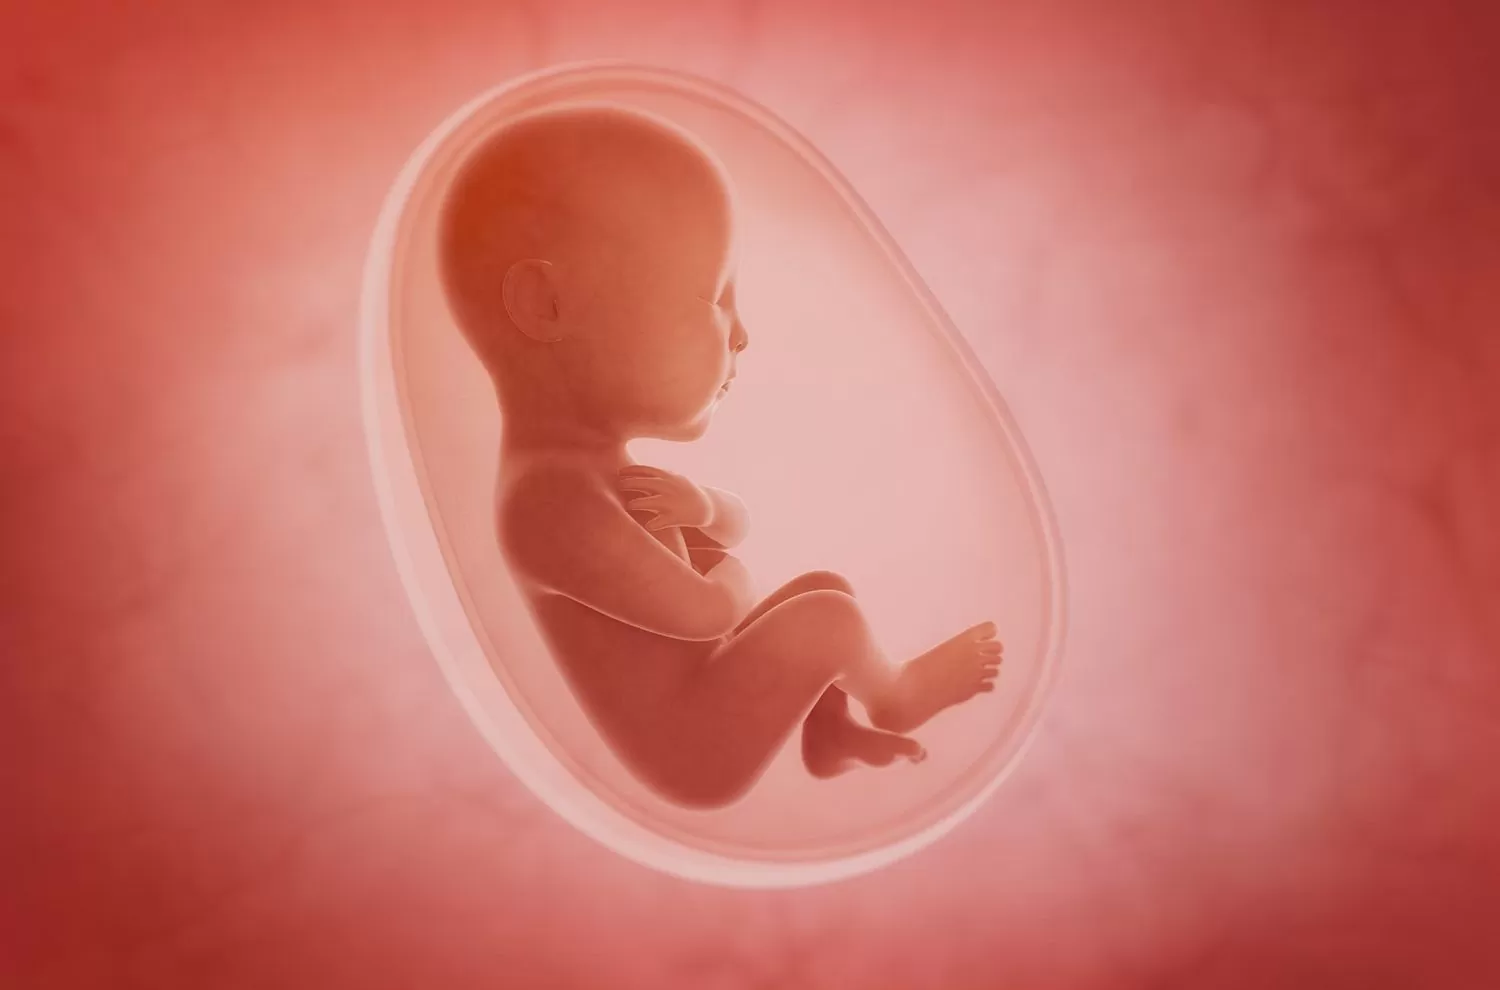 زمان تشکیل قلب جنین در چندمین هفته بارداری است؟